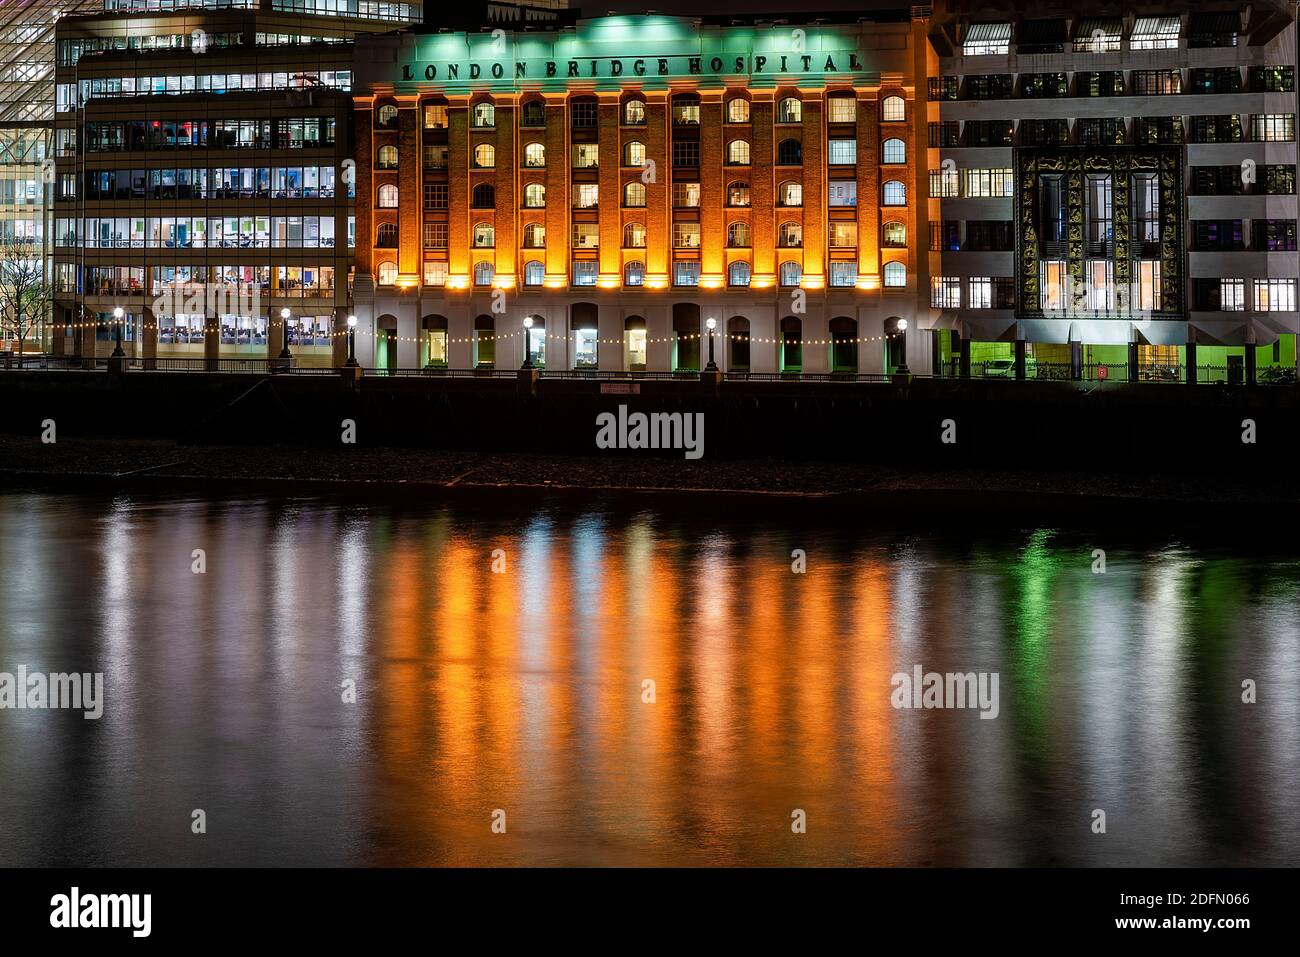 Londres, Reino Unido - Jan 2020:London Bridge Hospital iluminado en la noche junto a los modernos edificios de oficinas, que se reflejan en el río Támesis Foto de stock